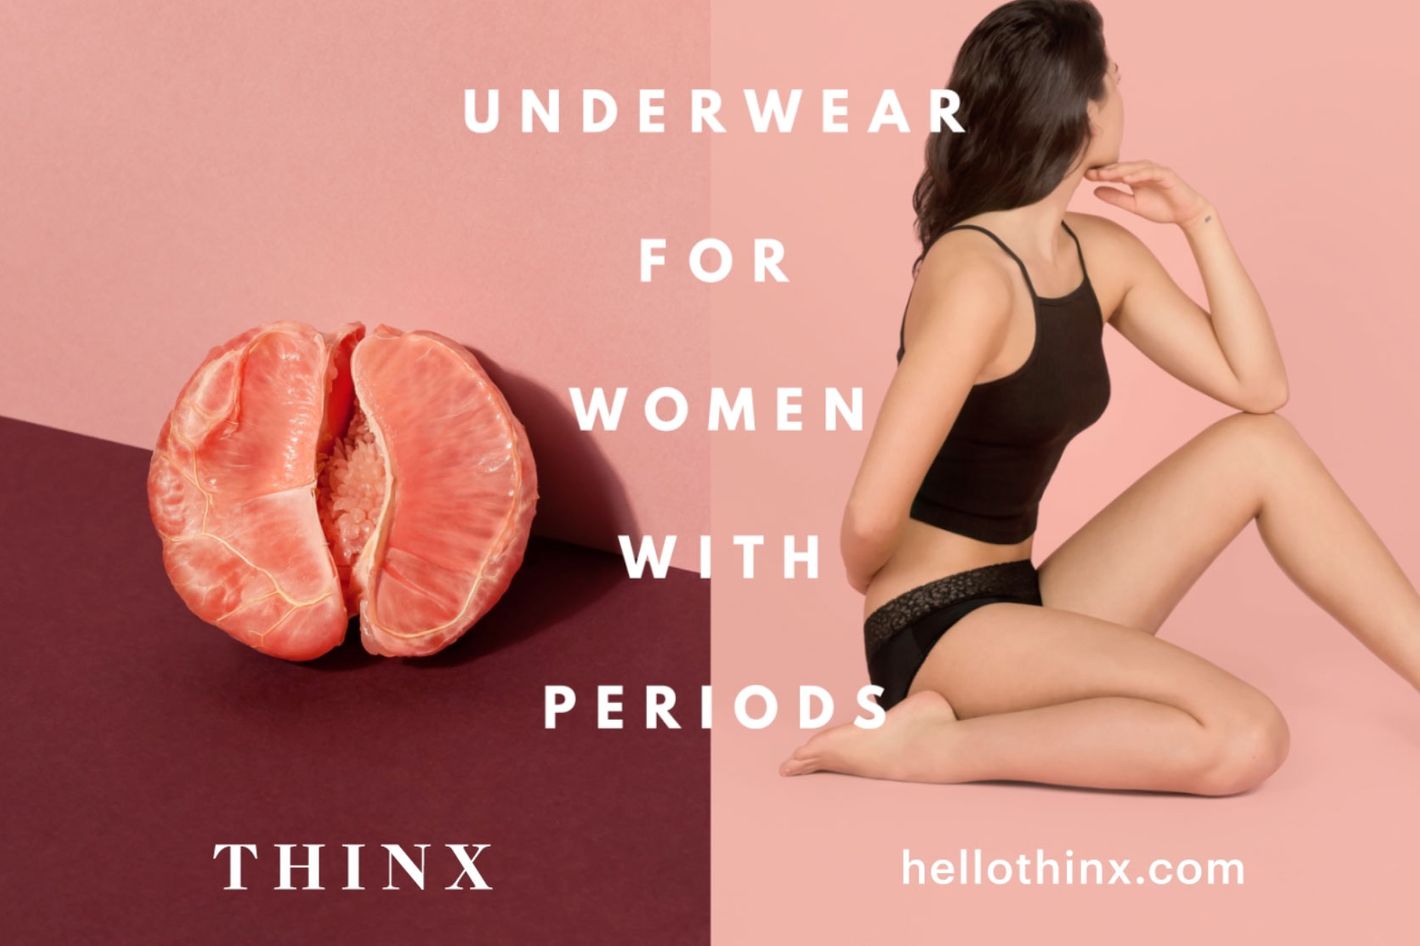 MENstruation by Thinx - Period-proof underwear